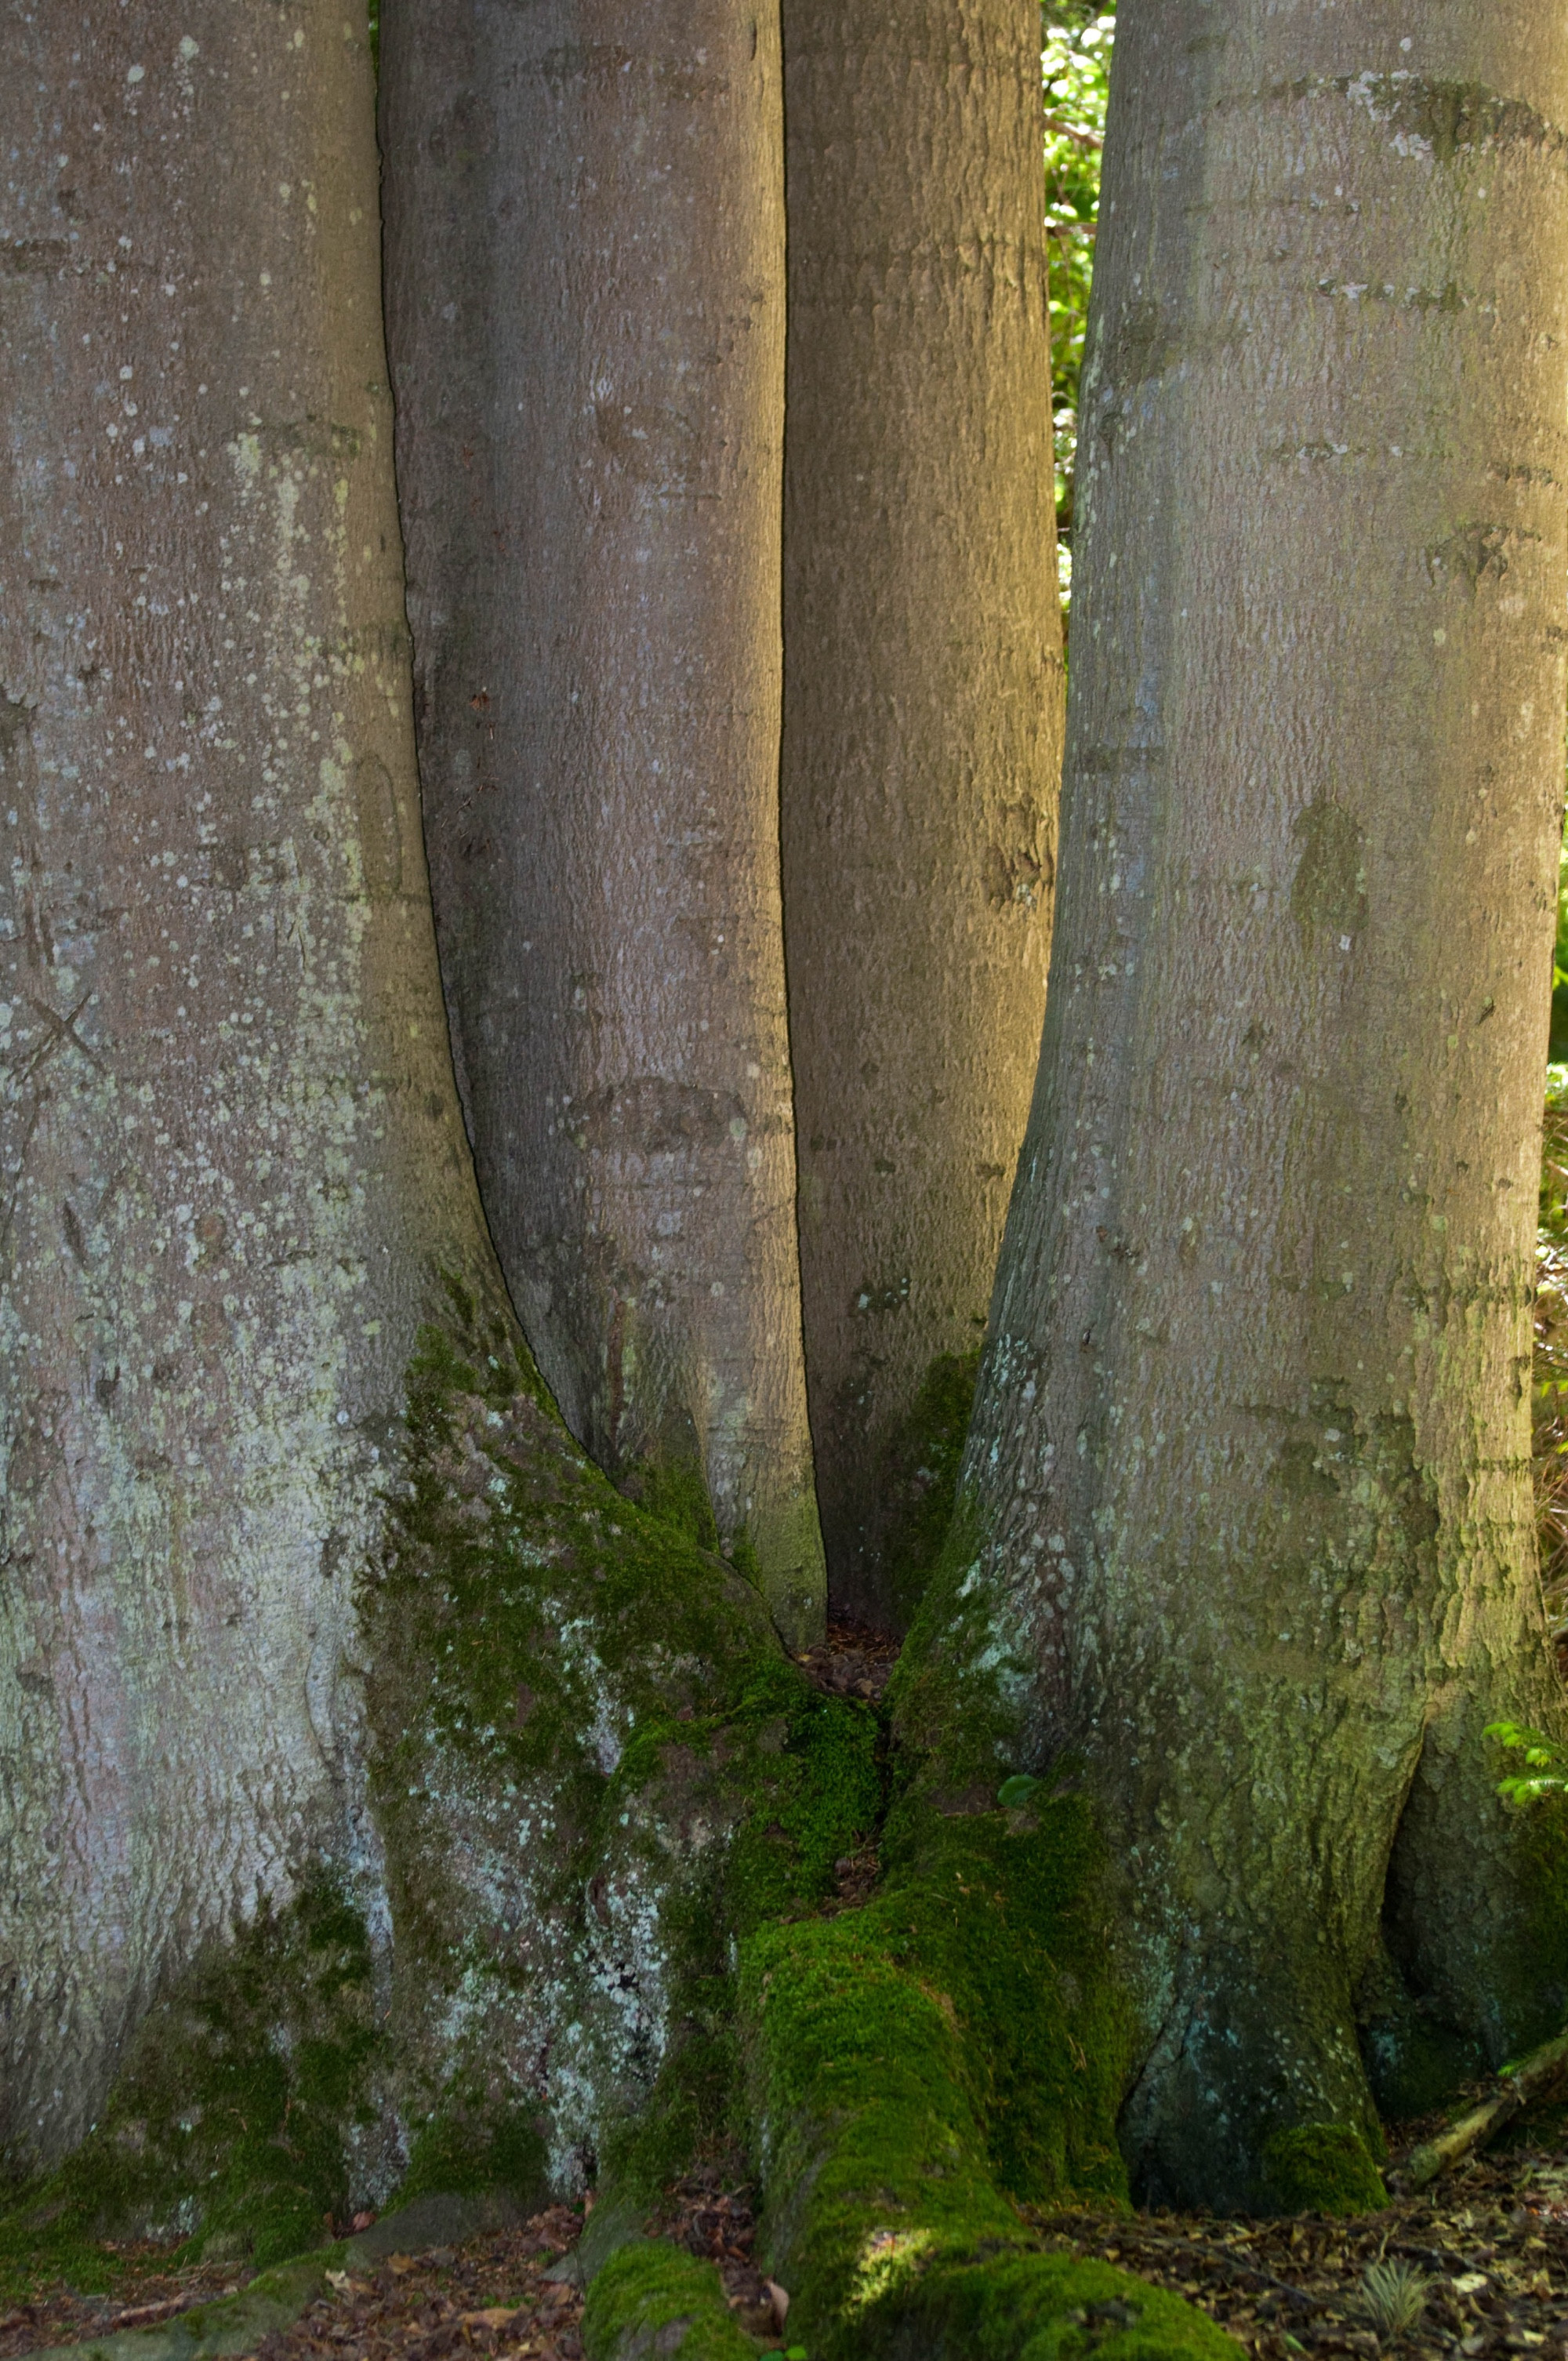 Tree-Family at Bärensee